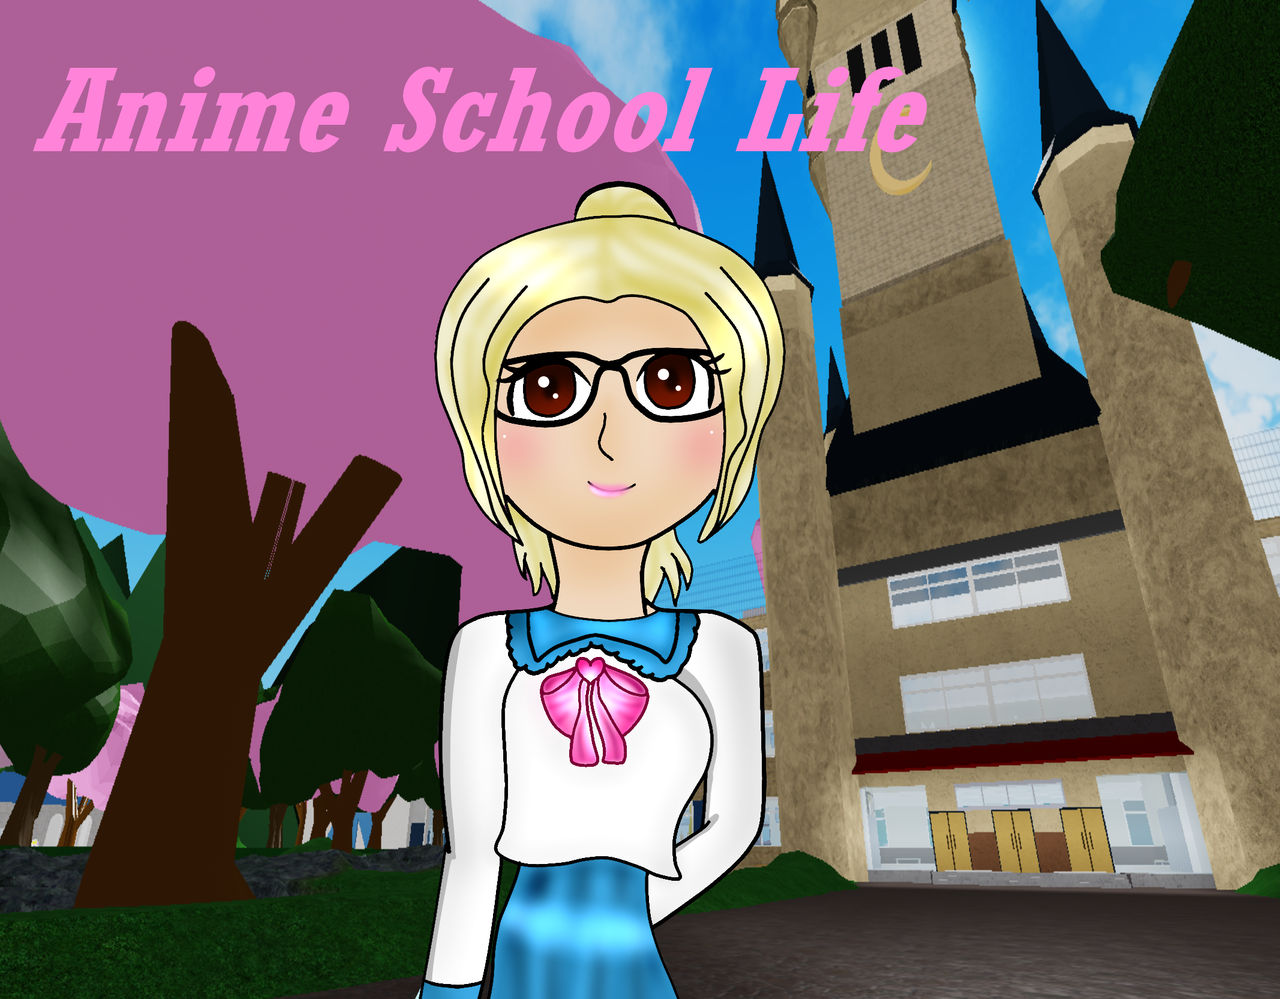 Anime School Life Roblox By Specialspy On Deviantart - anime school life roblox